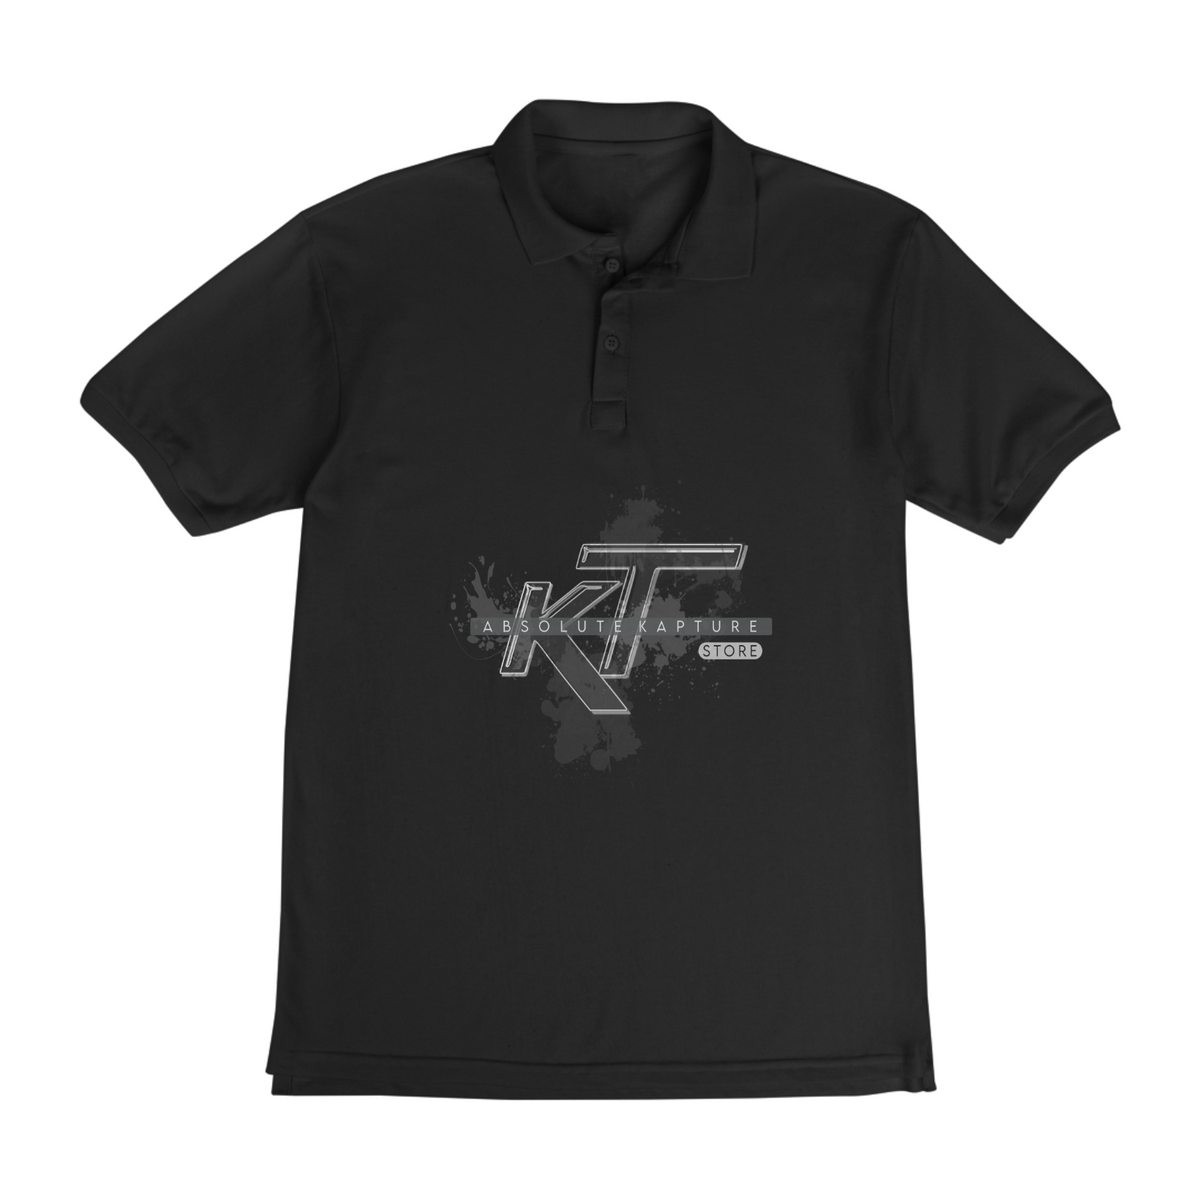 Nome do produto: Camiseta Polo | ABS KapTure